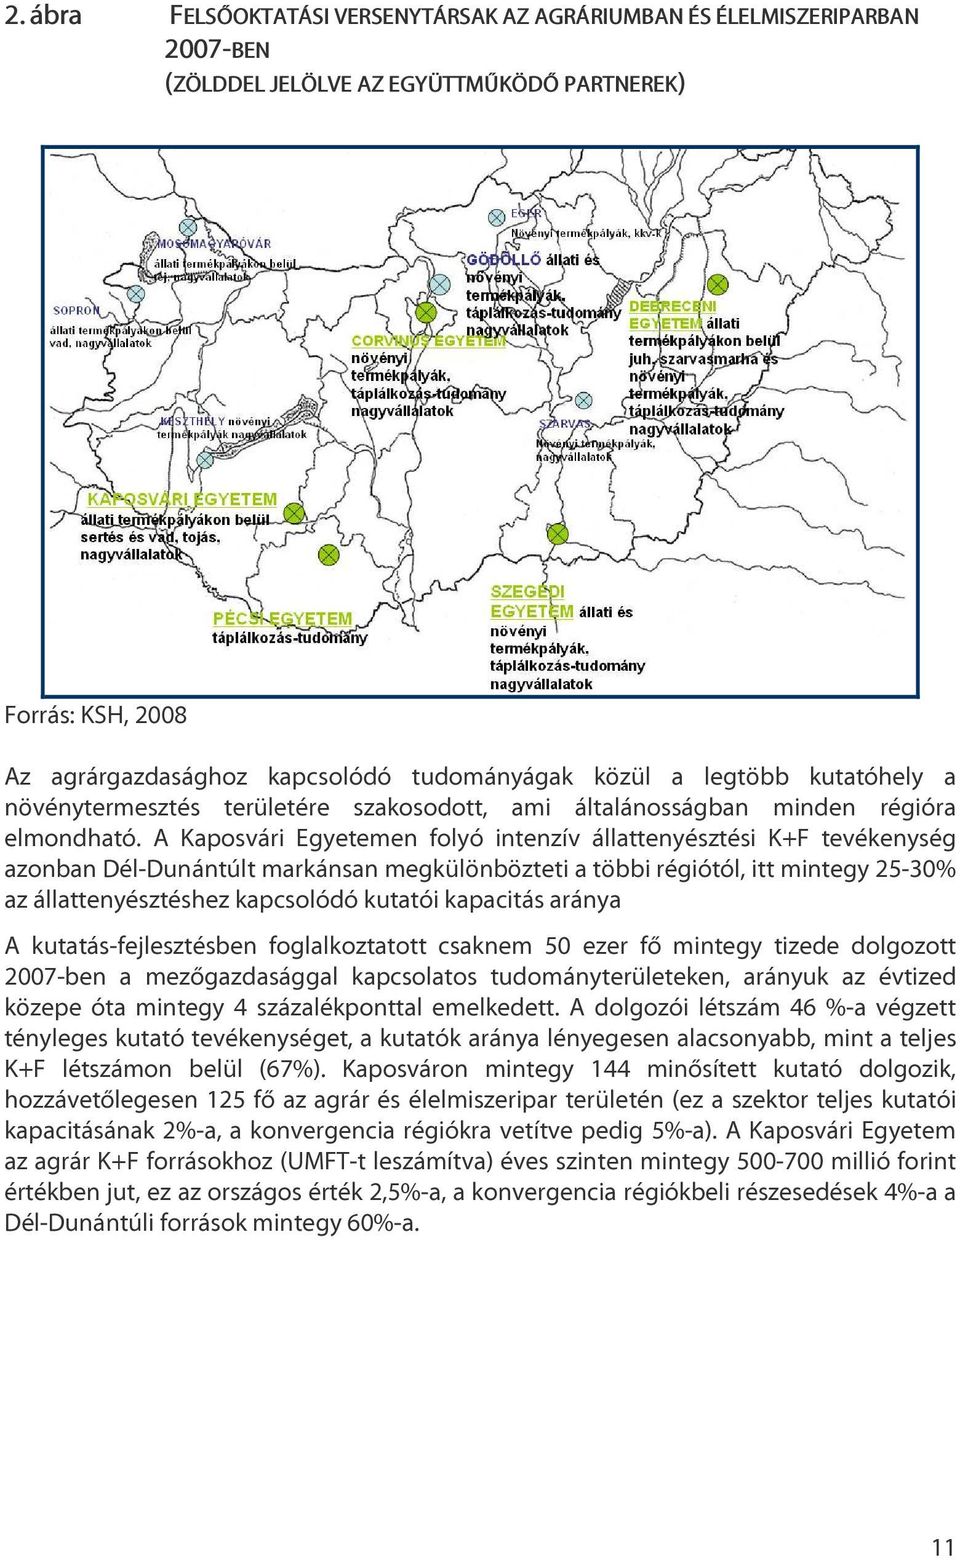 A Kaposvári Egyetemen folyó intenzív állattenyésztési K+F tevékenység azonban Dél-Dunántúlt markánsan megkülönbözteti a többi régiótól, itt mintegy 25-30% az állattenyésztéshez kapcsolódó kutatói